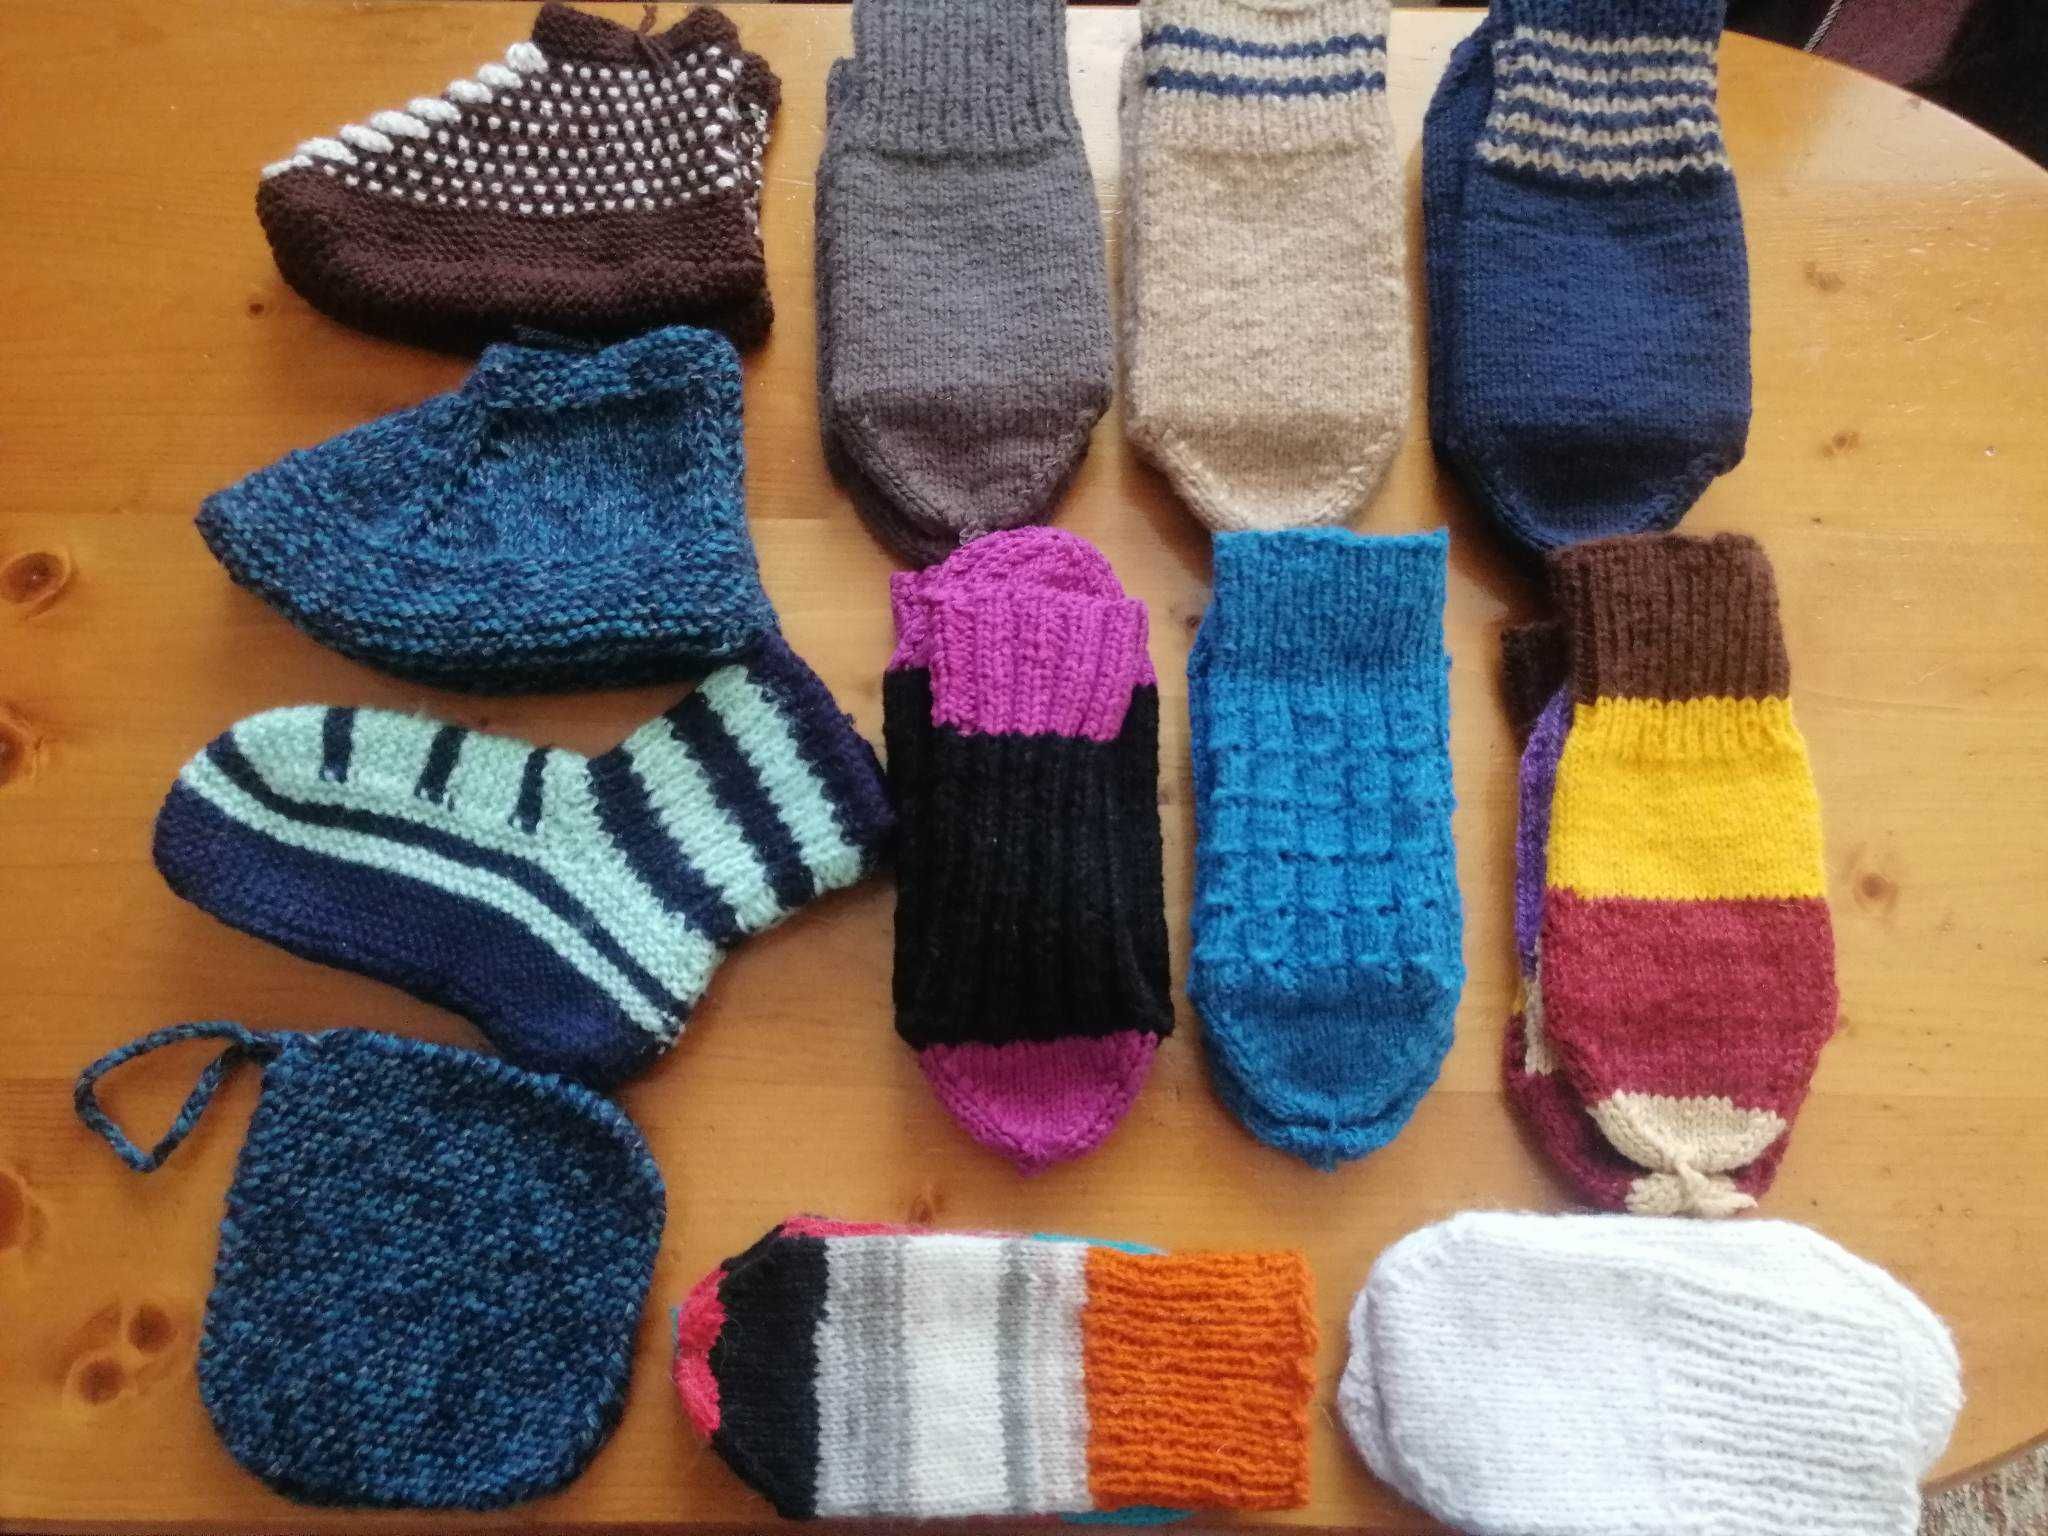 Плетени чорапи, терлички и хватки